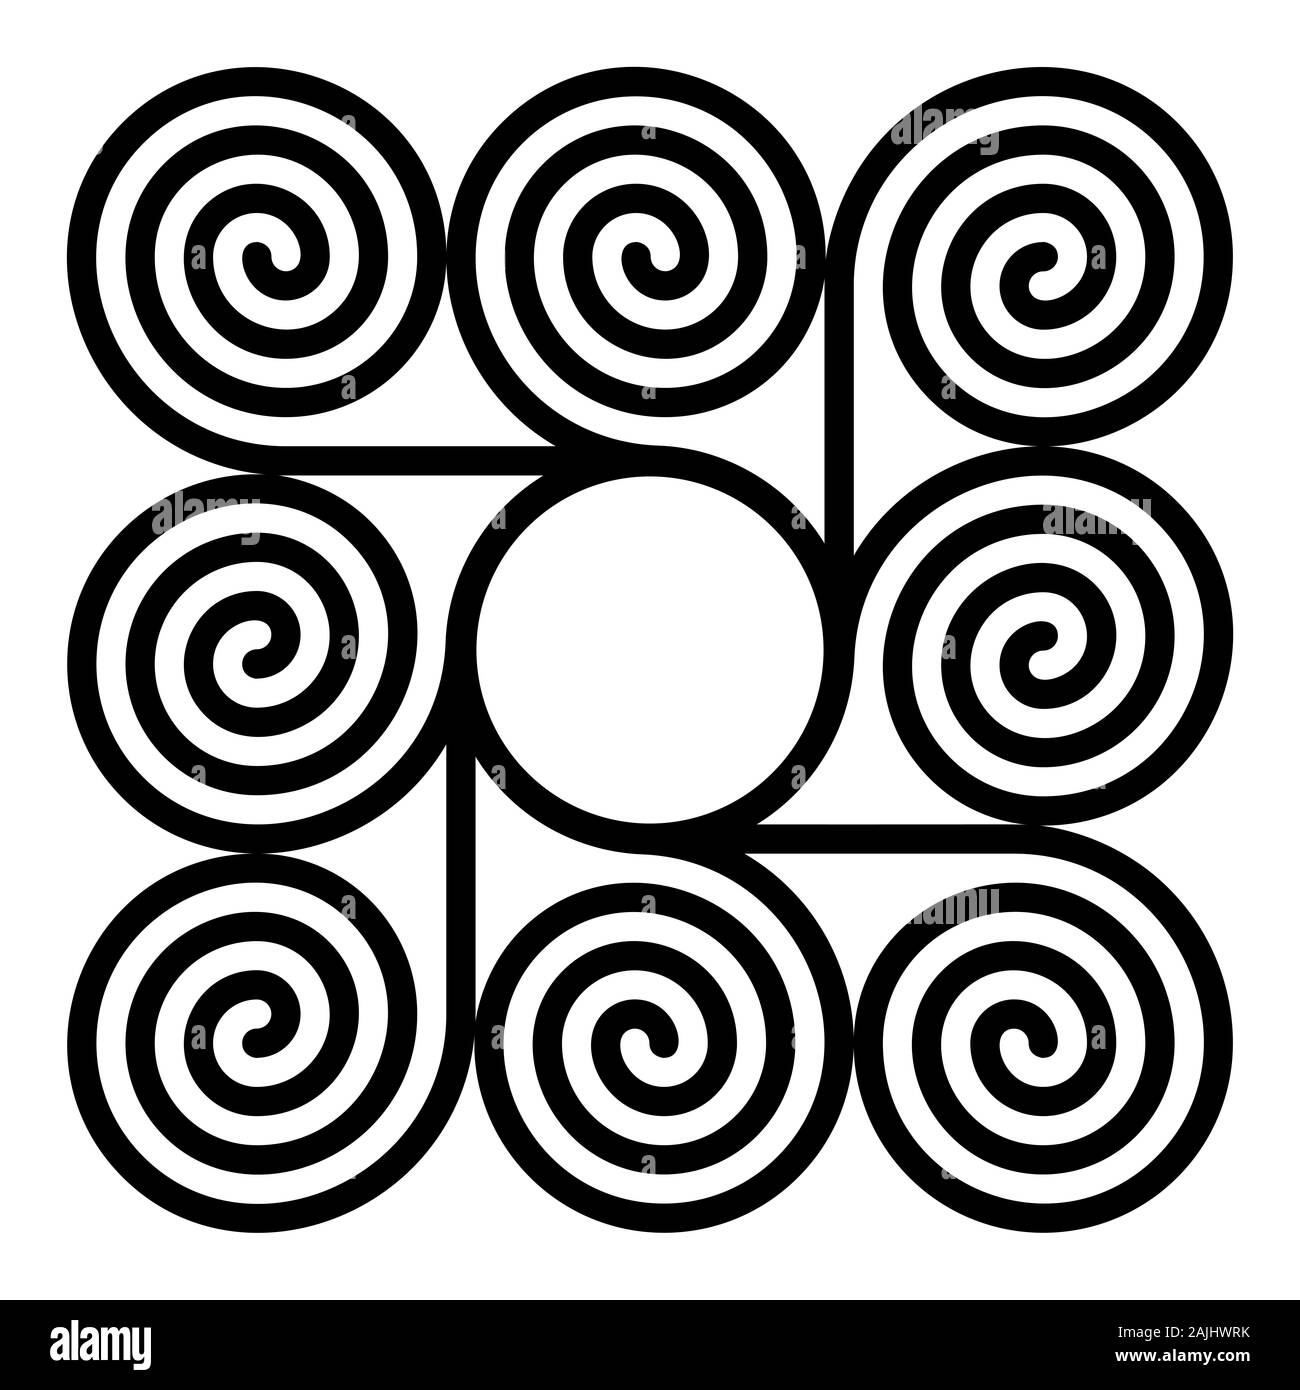 Huit spirales arithmétique autour d'un cercle formant un motif en forme de carré. Les spirales d'archimède des mêmes intervalles connecté avec un cercle au centre. Banque D'Images